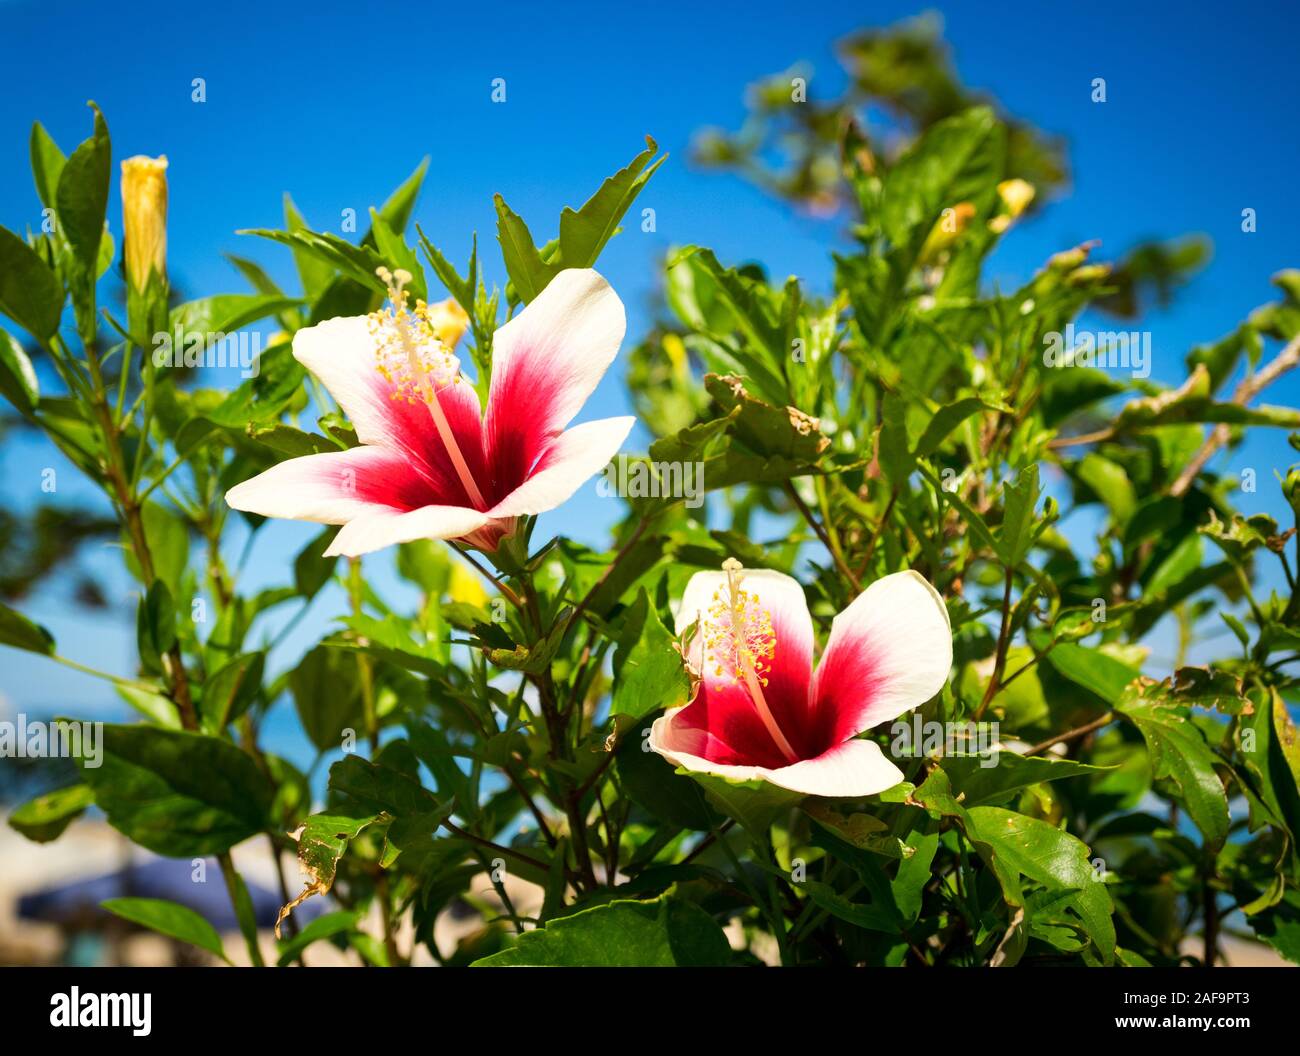 Hibiscus chino blanco (Hibiscus rosa-sinensis) flores con corazones rojos, también conocido como un hibisco hawaiano o un barbero de rosas. Ishigaki, Okinawa, Japón Foto de stock